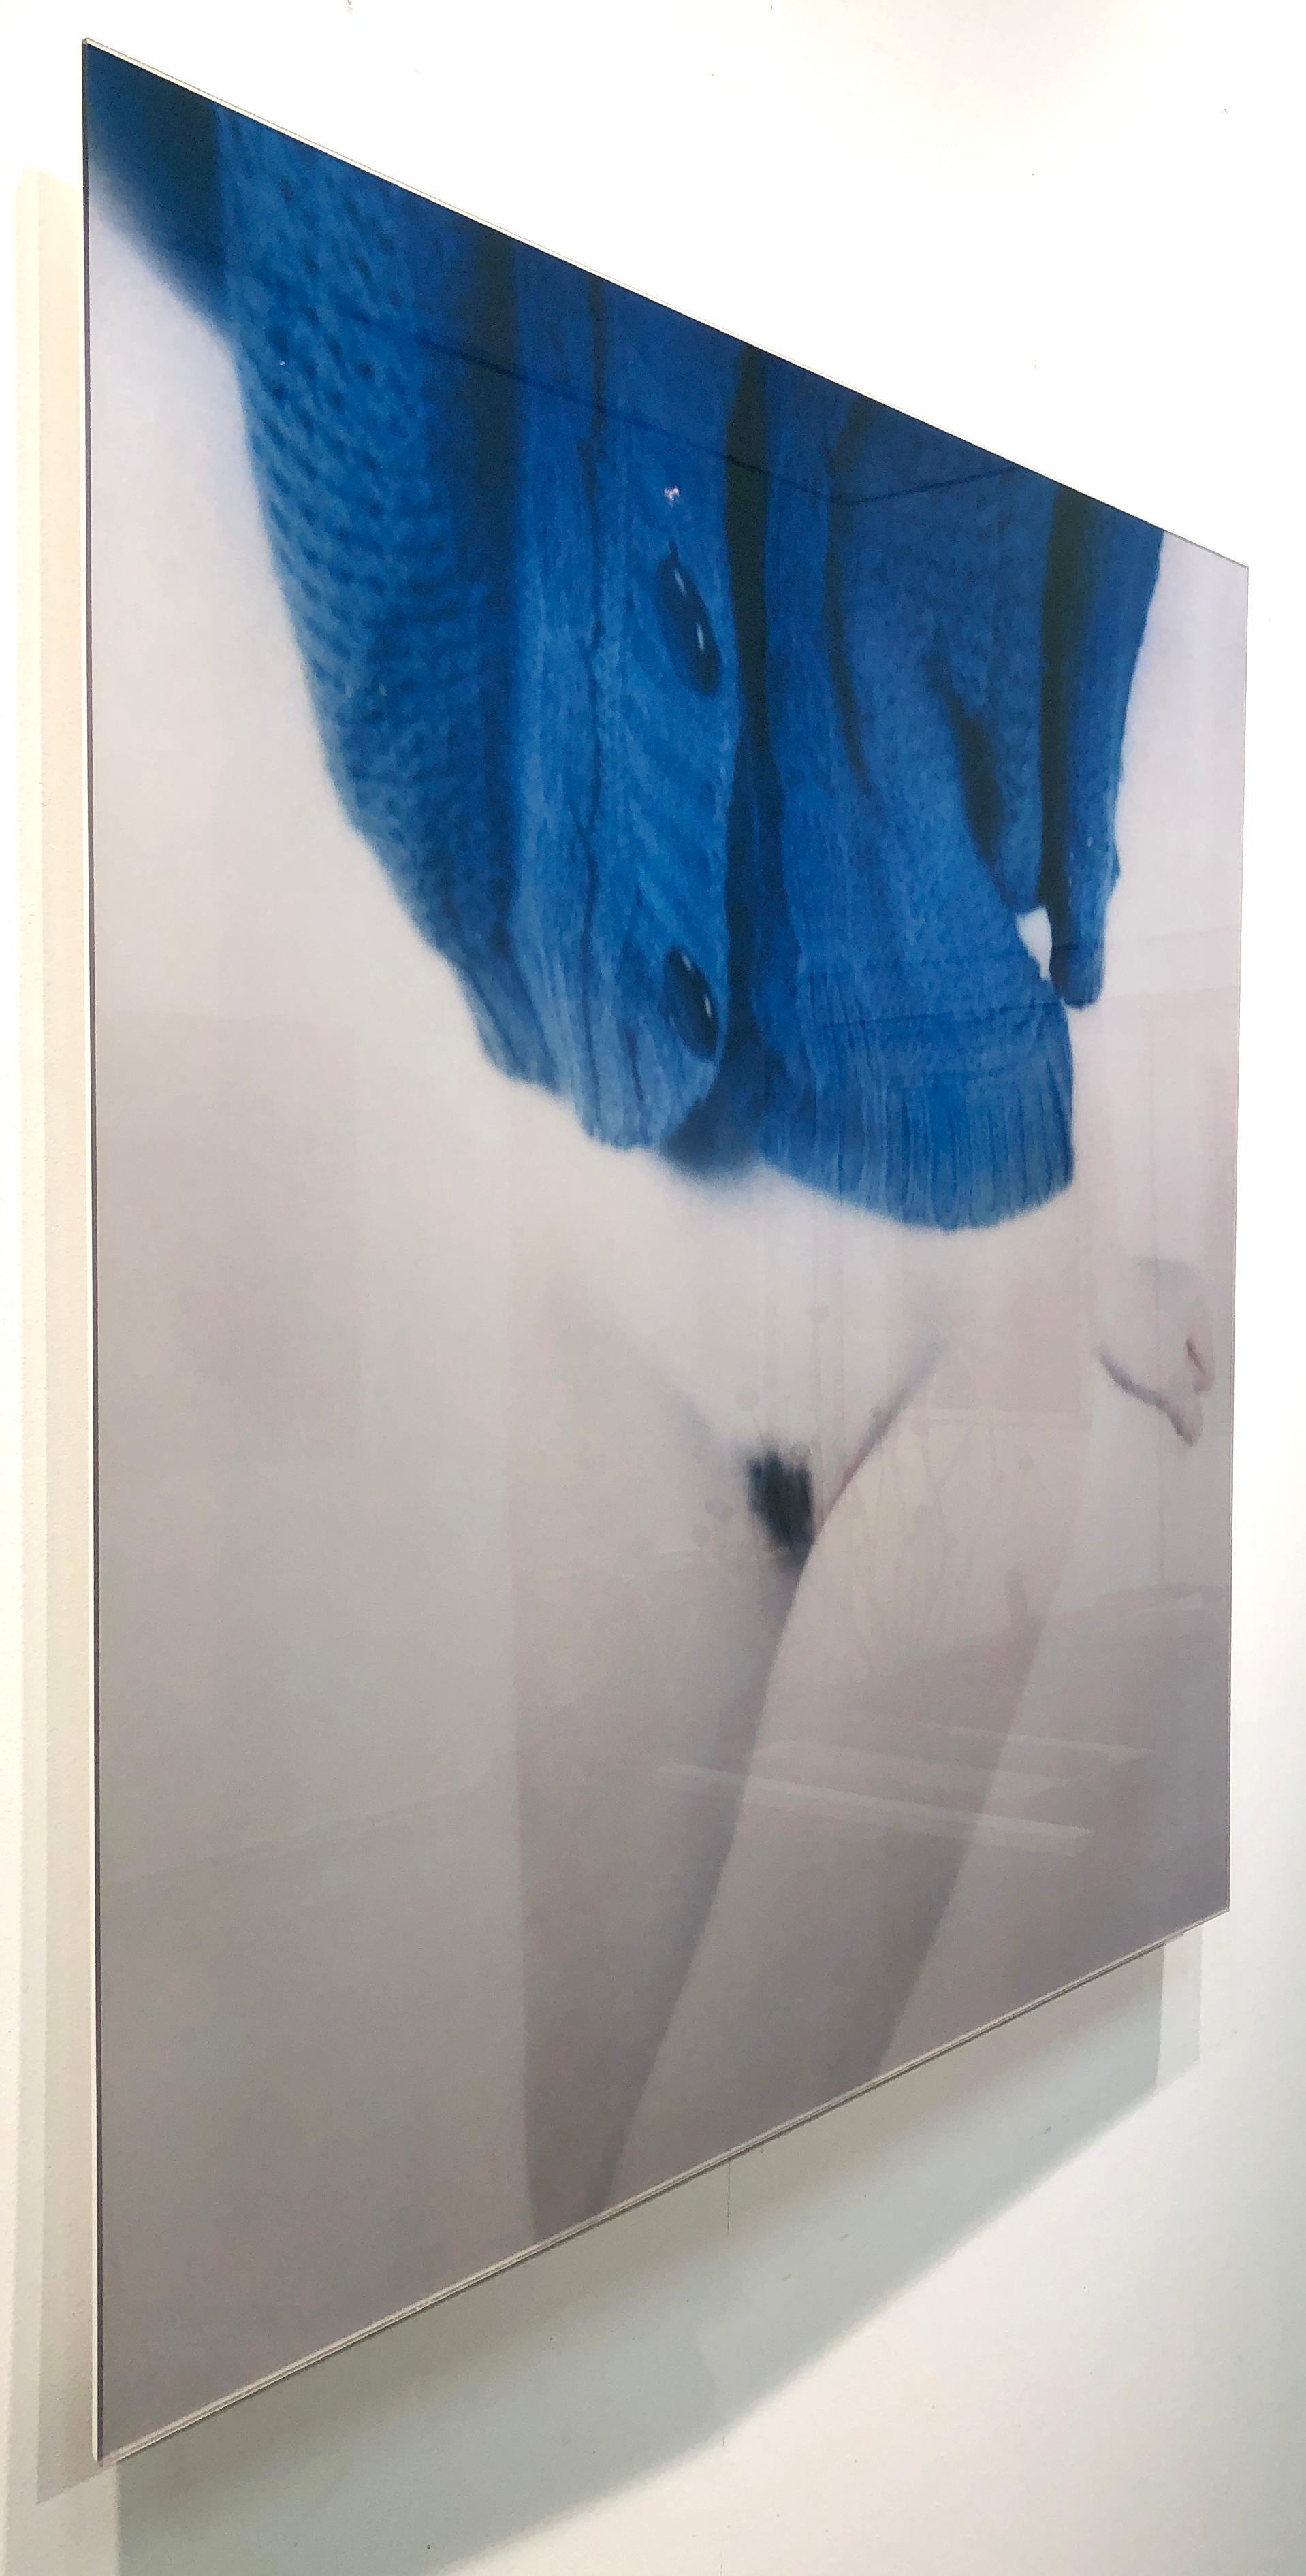 tricoté semi-nu et bleu, issu de la série de photographies Bright Bodies en vente 2